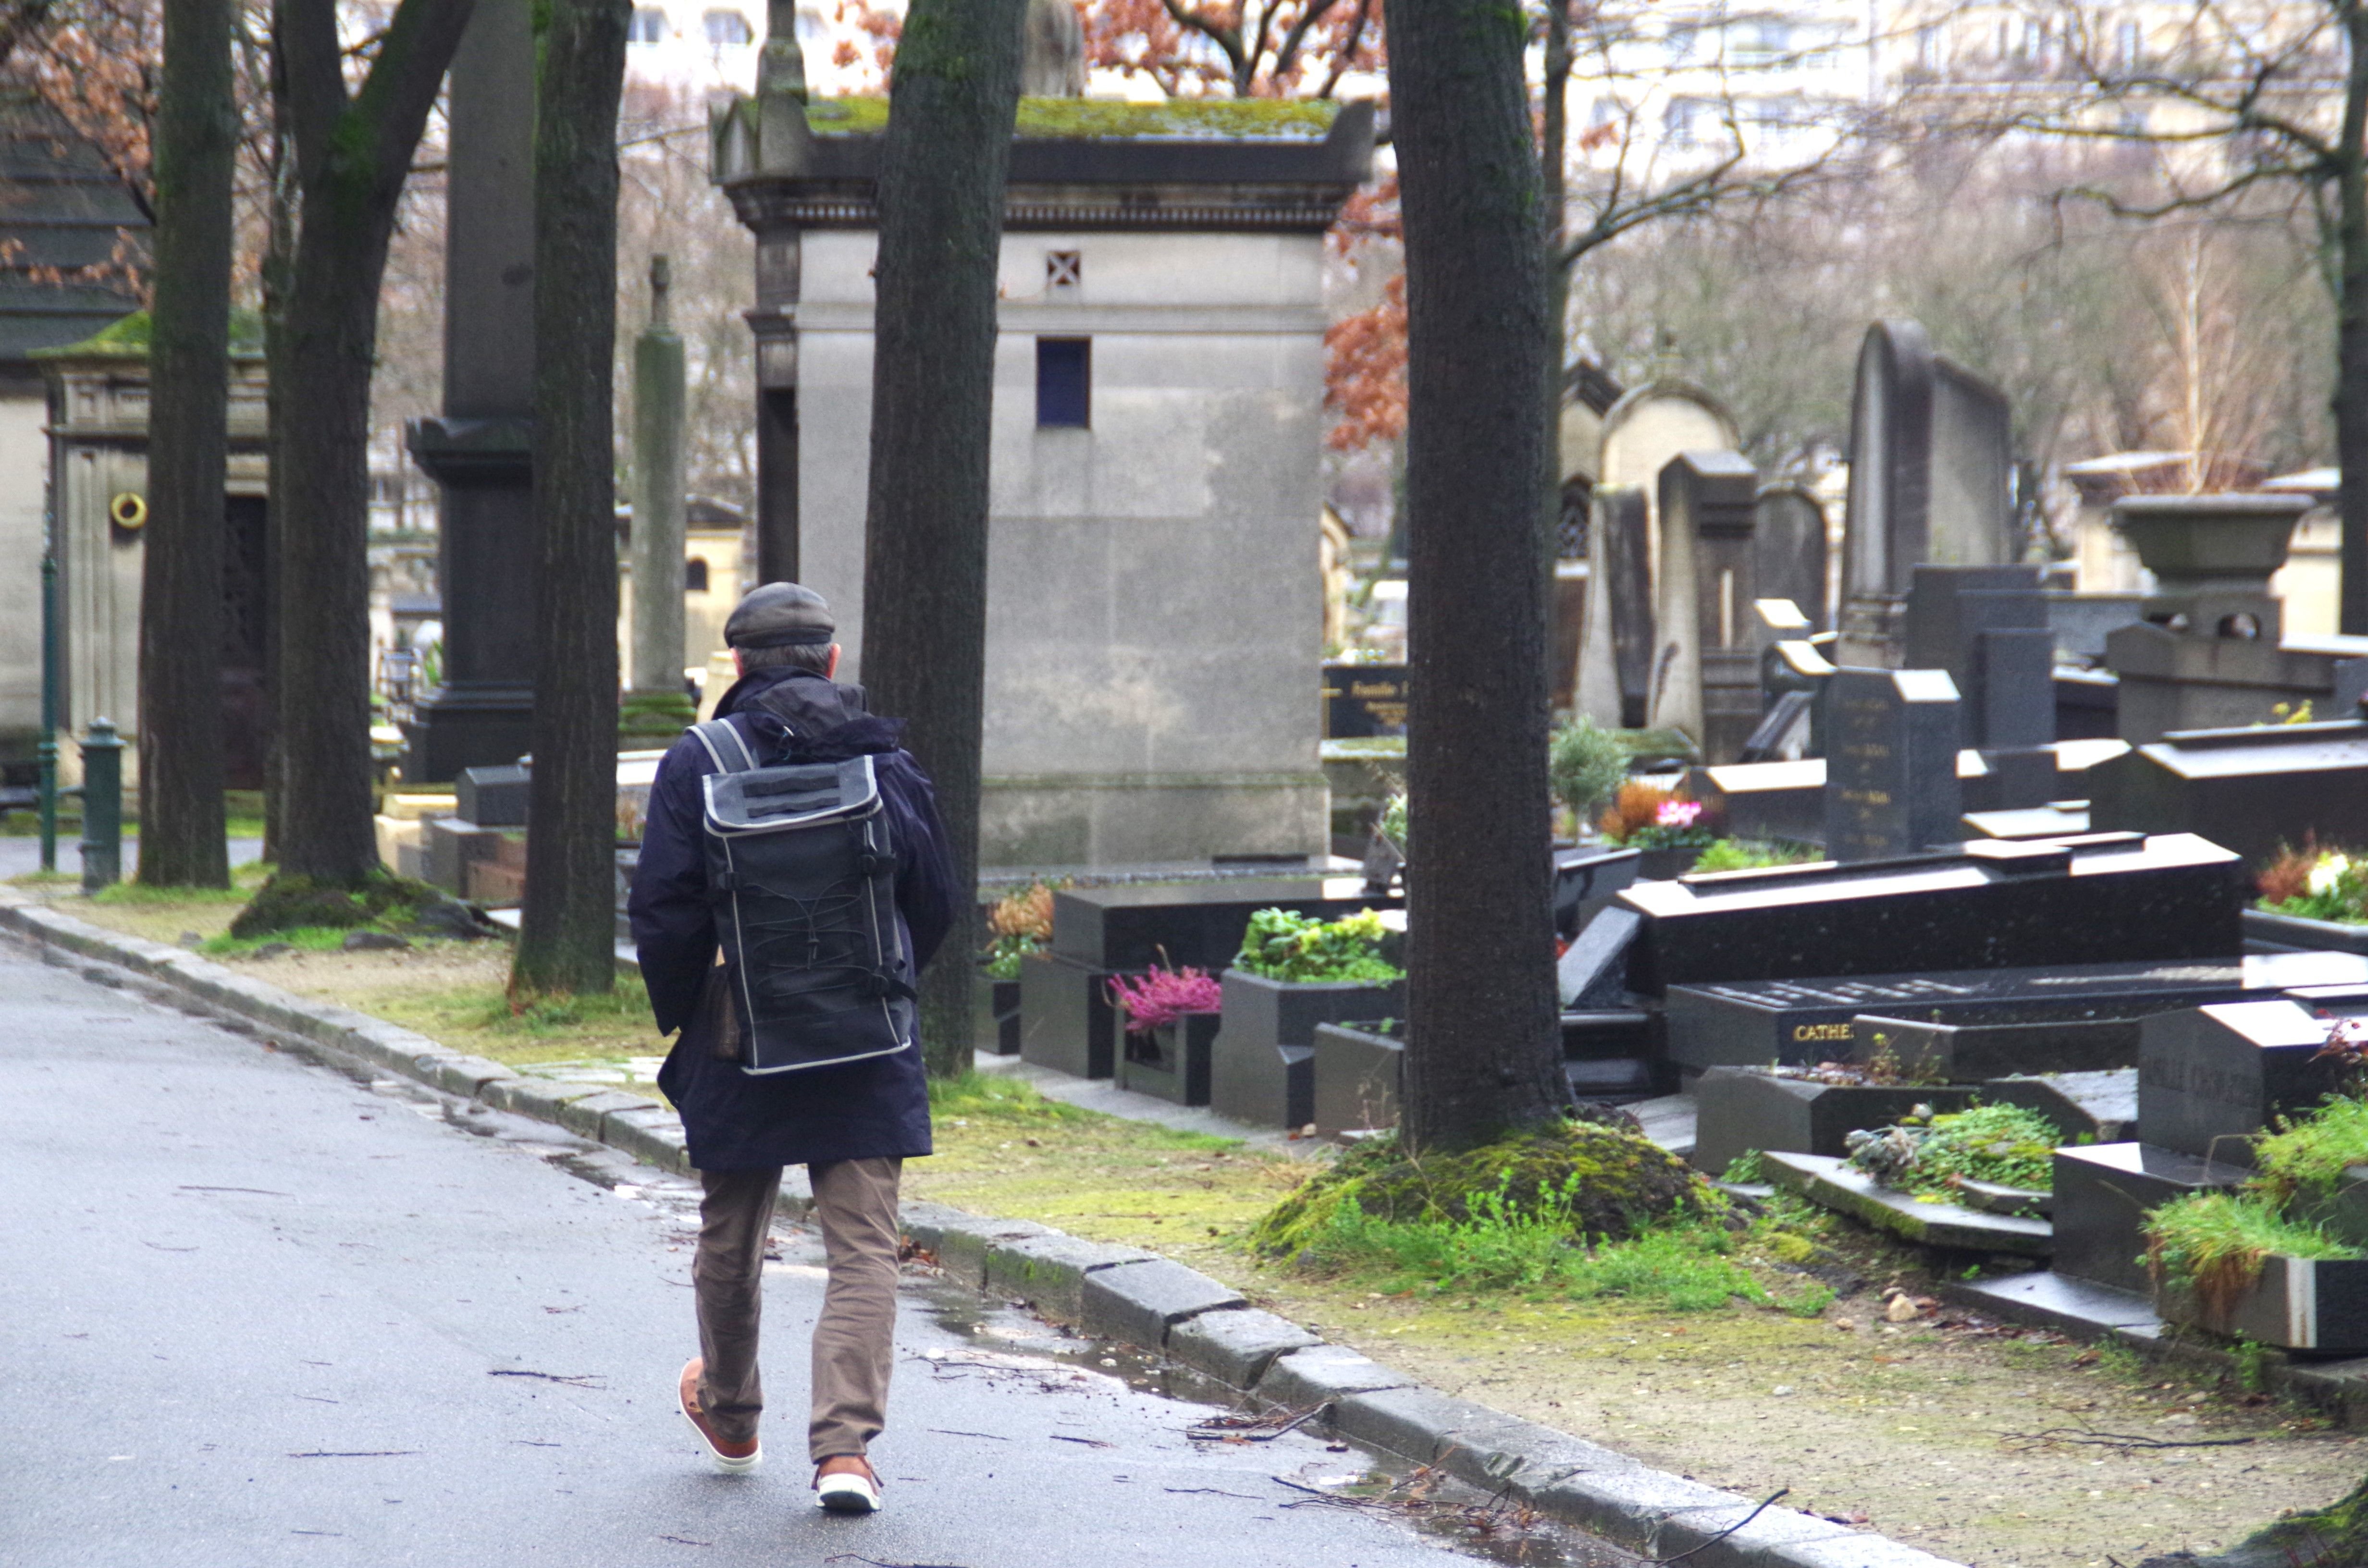 Cimetière du Montparnasse à Paris (XIVe), ce lundi. Ce lieu, comme quatre autres cimetières, ont d'ores et déjà été retenus comme pouvant figurer parmi les espaces verts de la capitale. LP/Alexis Bisson